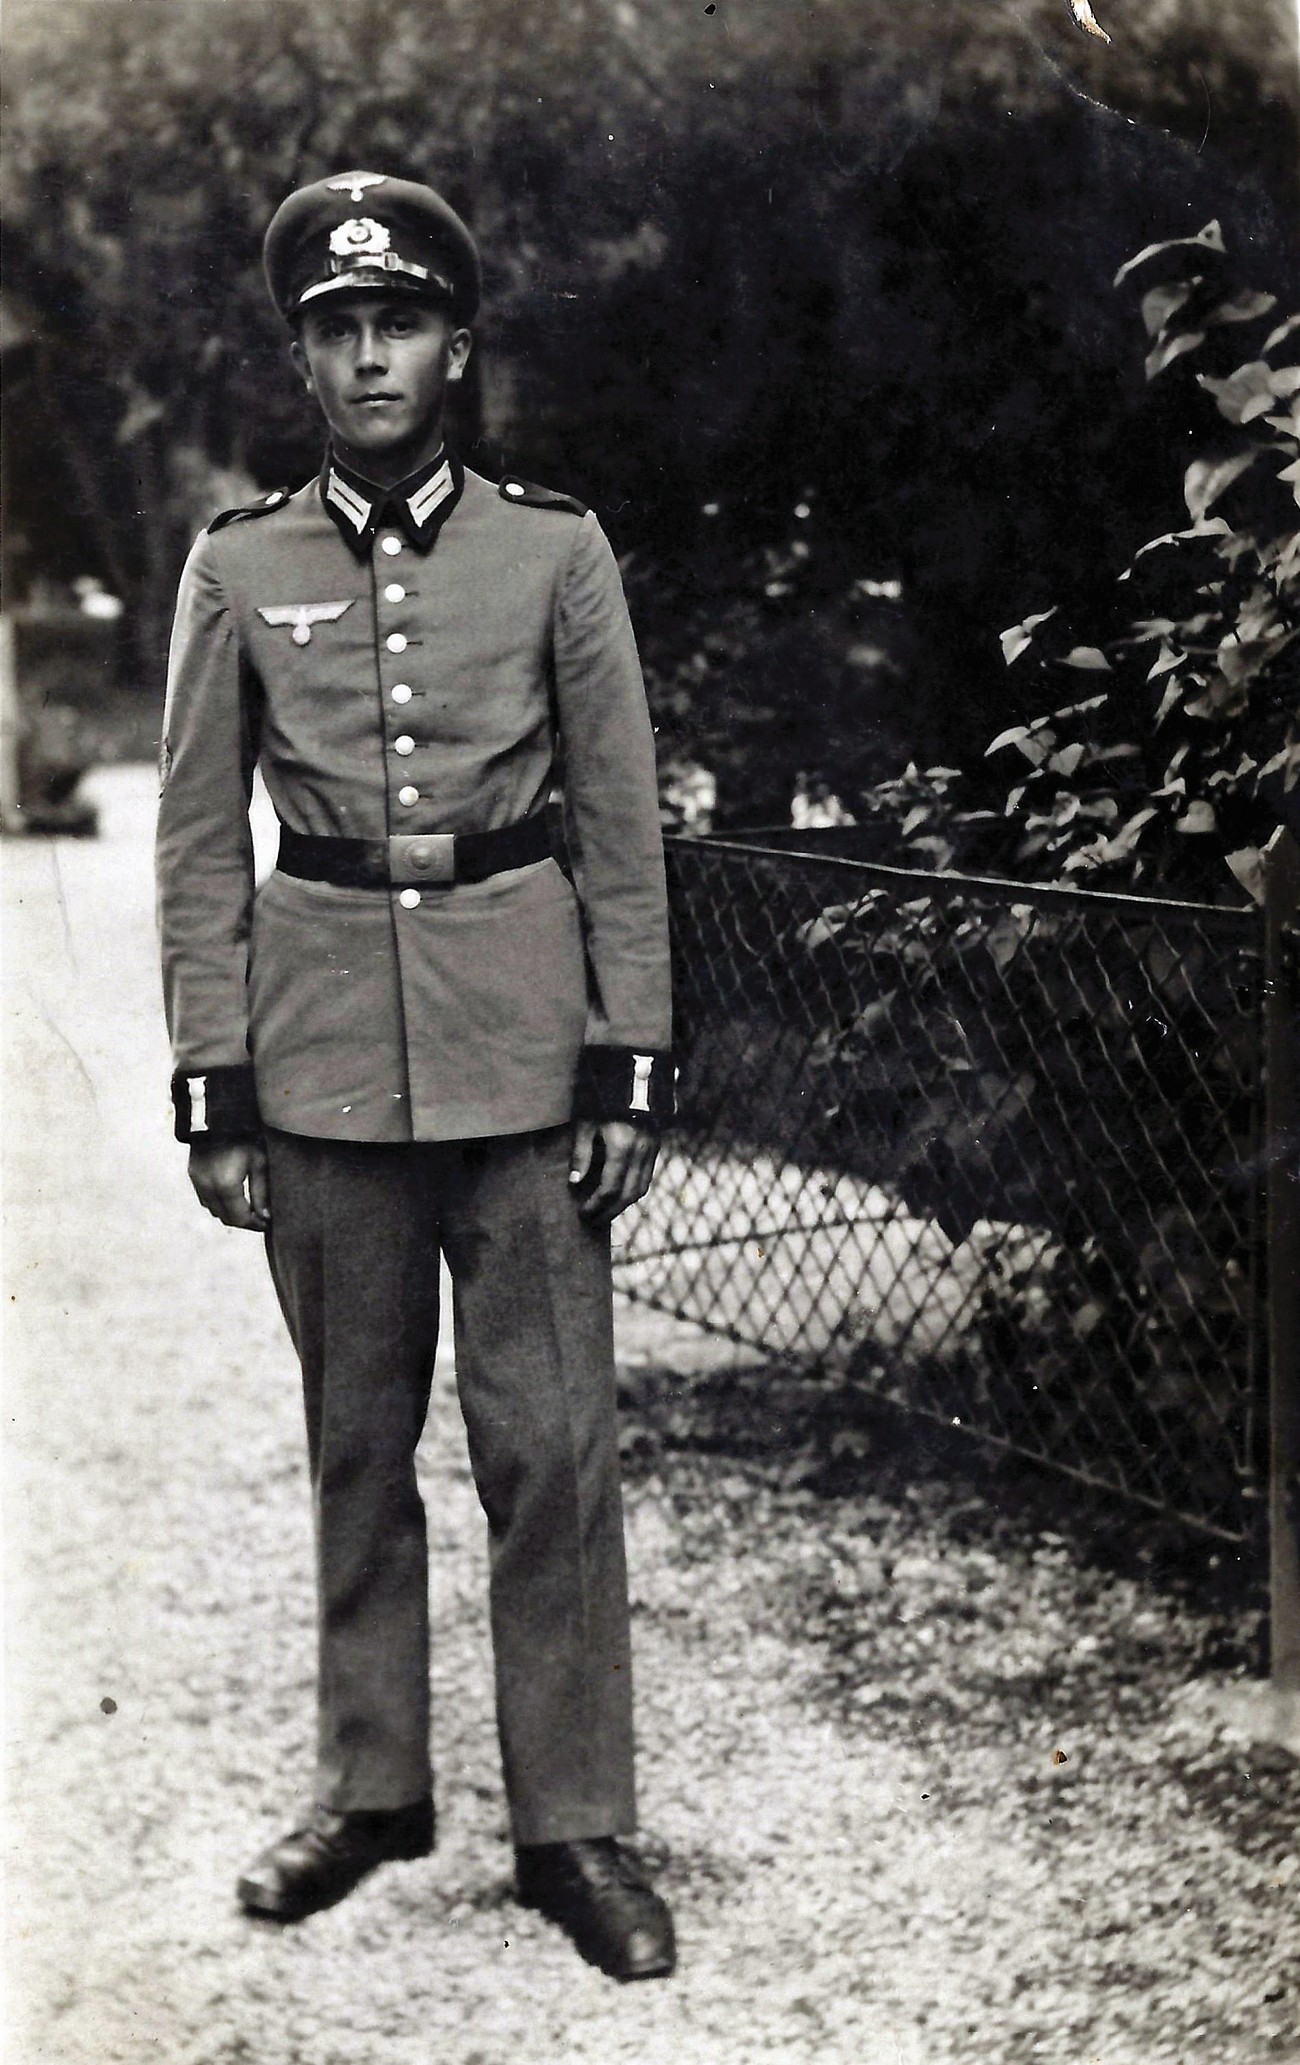 Anton Belcer, rojen leta 1923, spada v skupino prvih vojnih mobilizirancev na Spodnjem Štajerskem, saj ga je prisilni vpoklic v nemško kopensko vojsko (Heer) doletel že julija 1942, ko je okupator pričel z vpoklicem prvega letnika (tj. 1923). V nasprotju s posebno odredbo o pošiljanju tega letnika najprej v delovno službo, šele nato pa v Wehrmacht je bil Anton odposlan direktno na fronto. Boril se je v tankovski lovski enoti na Finskem in Norveškem, kjer so ga zajeli Angleži. V borbah je utrpel hude ozebline nog, zaradi česar so mu morali odrezati 2 prsta na nogi. (Vir: Program prisilno mobiliziranih v nemško vojsko, MNZS, 19. 9. 2017. Objavljeno z dovoljenjem Irene Poharc, ki hrani izvirnik.